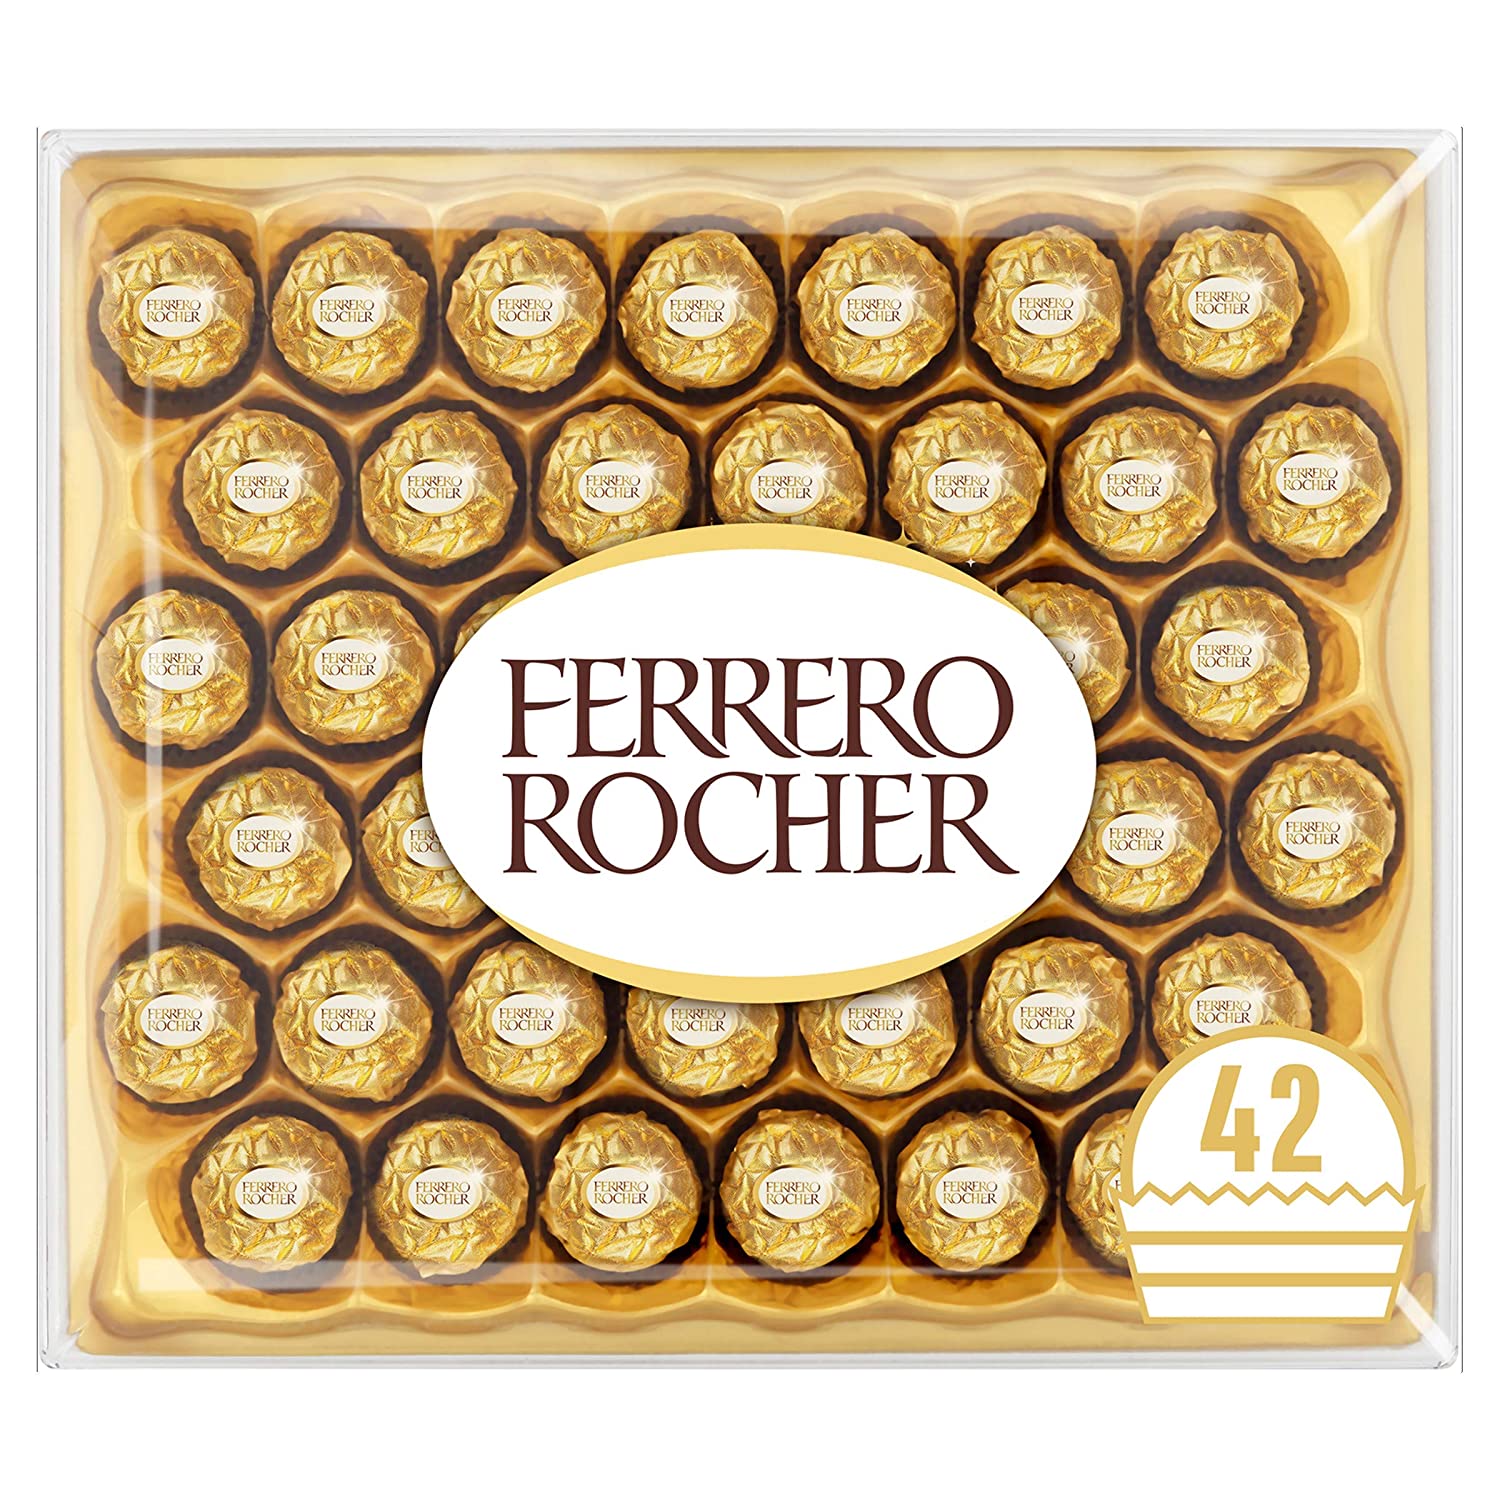 Amazon.com, Ferrero Rocher 24 Pieces 300g, Grocery & Gourmet Food